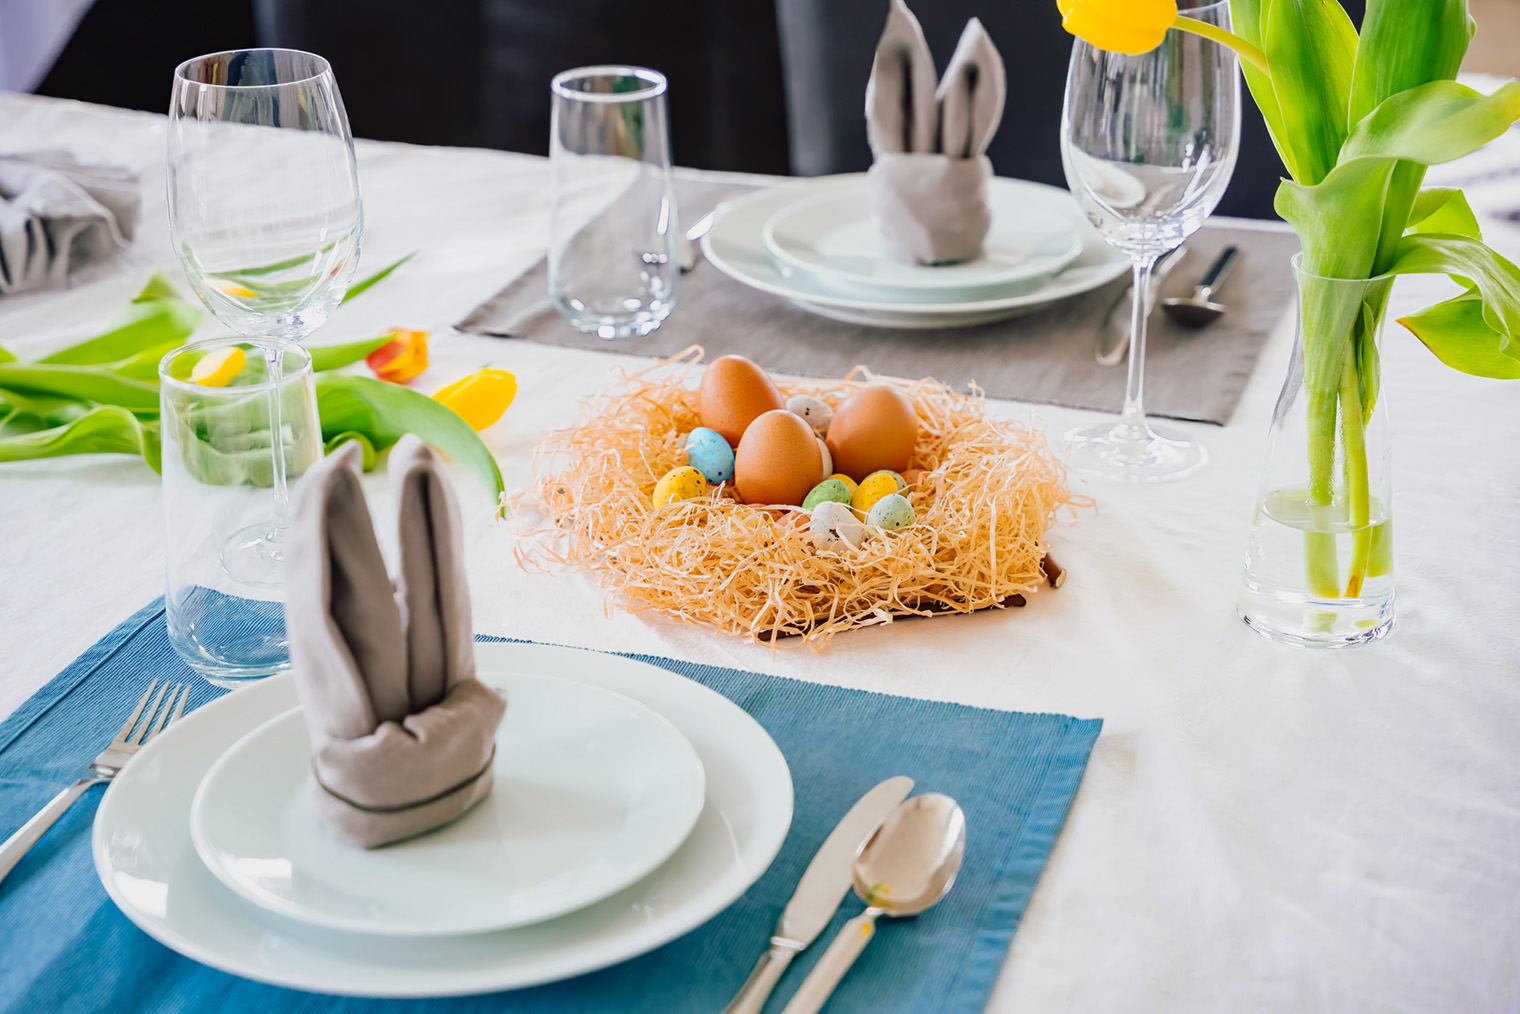 Пасхальная тематическая сервировка. Стол украшен гнездом с крашеными яйцами, а салфетки сложены в форме кроличьих ушек. Фотография: Jannissimo / Shutterstock / FOTODOM